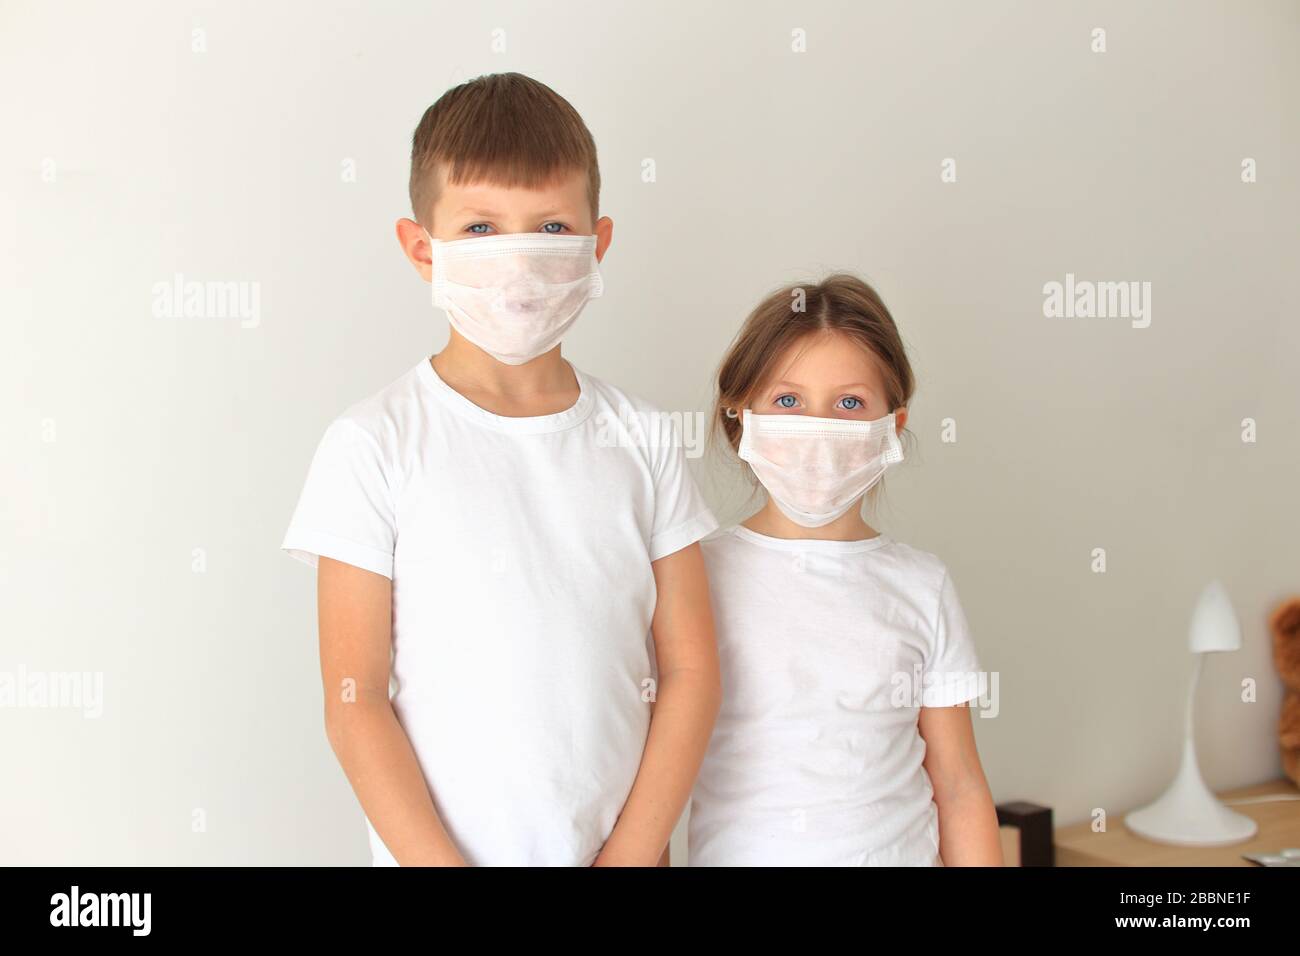 Los niños que se encuentran en una máscara respiratoria se encuentran en cuarentena en el hogar Foto de stock